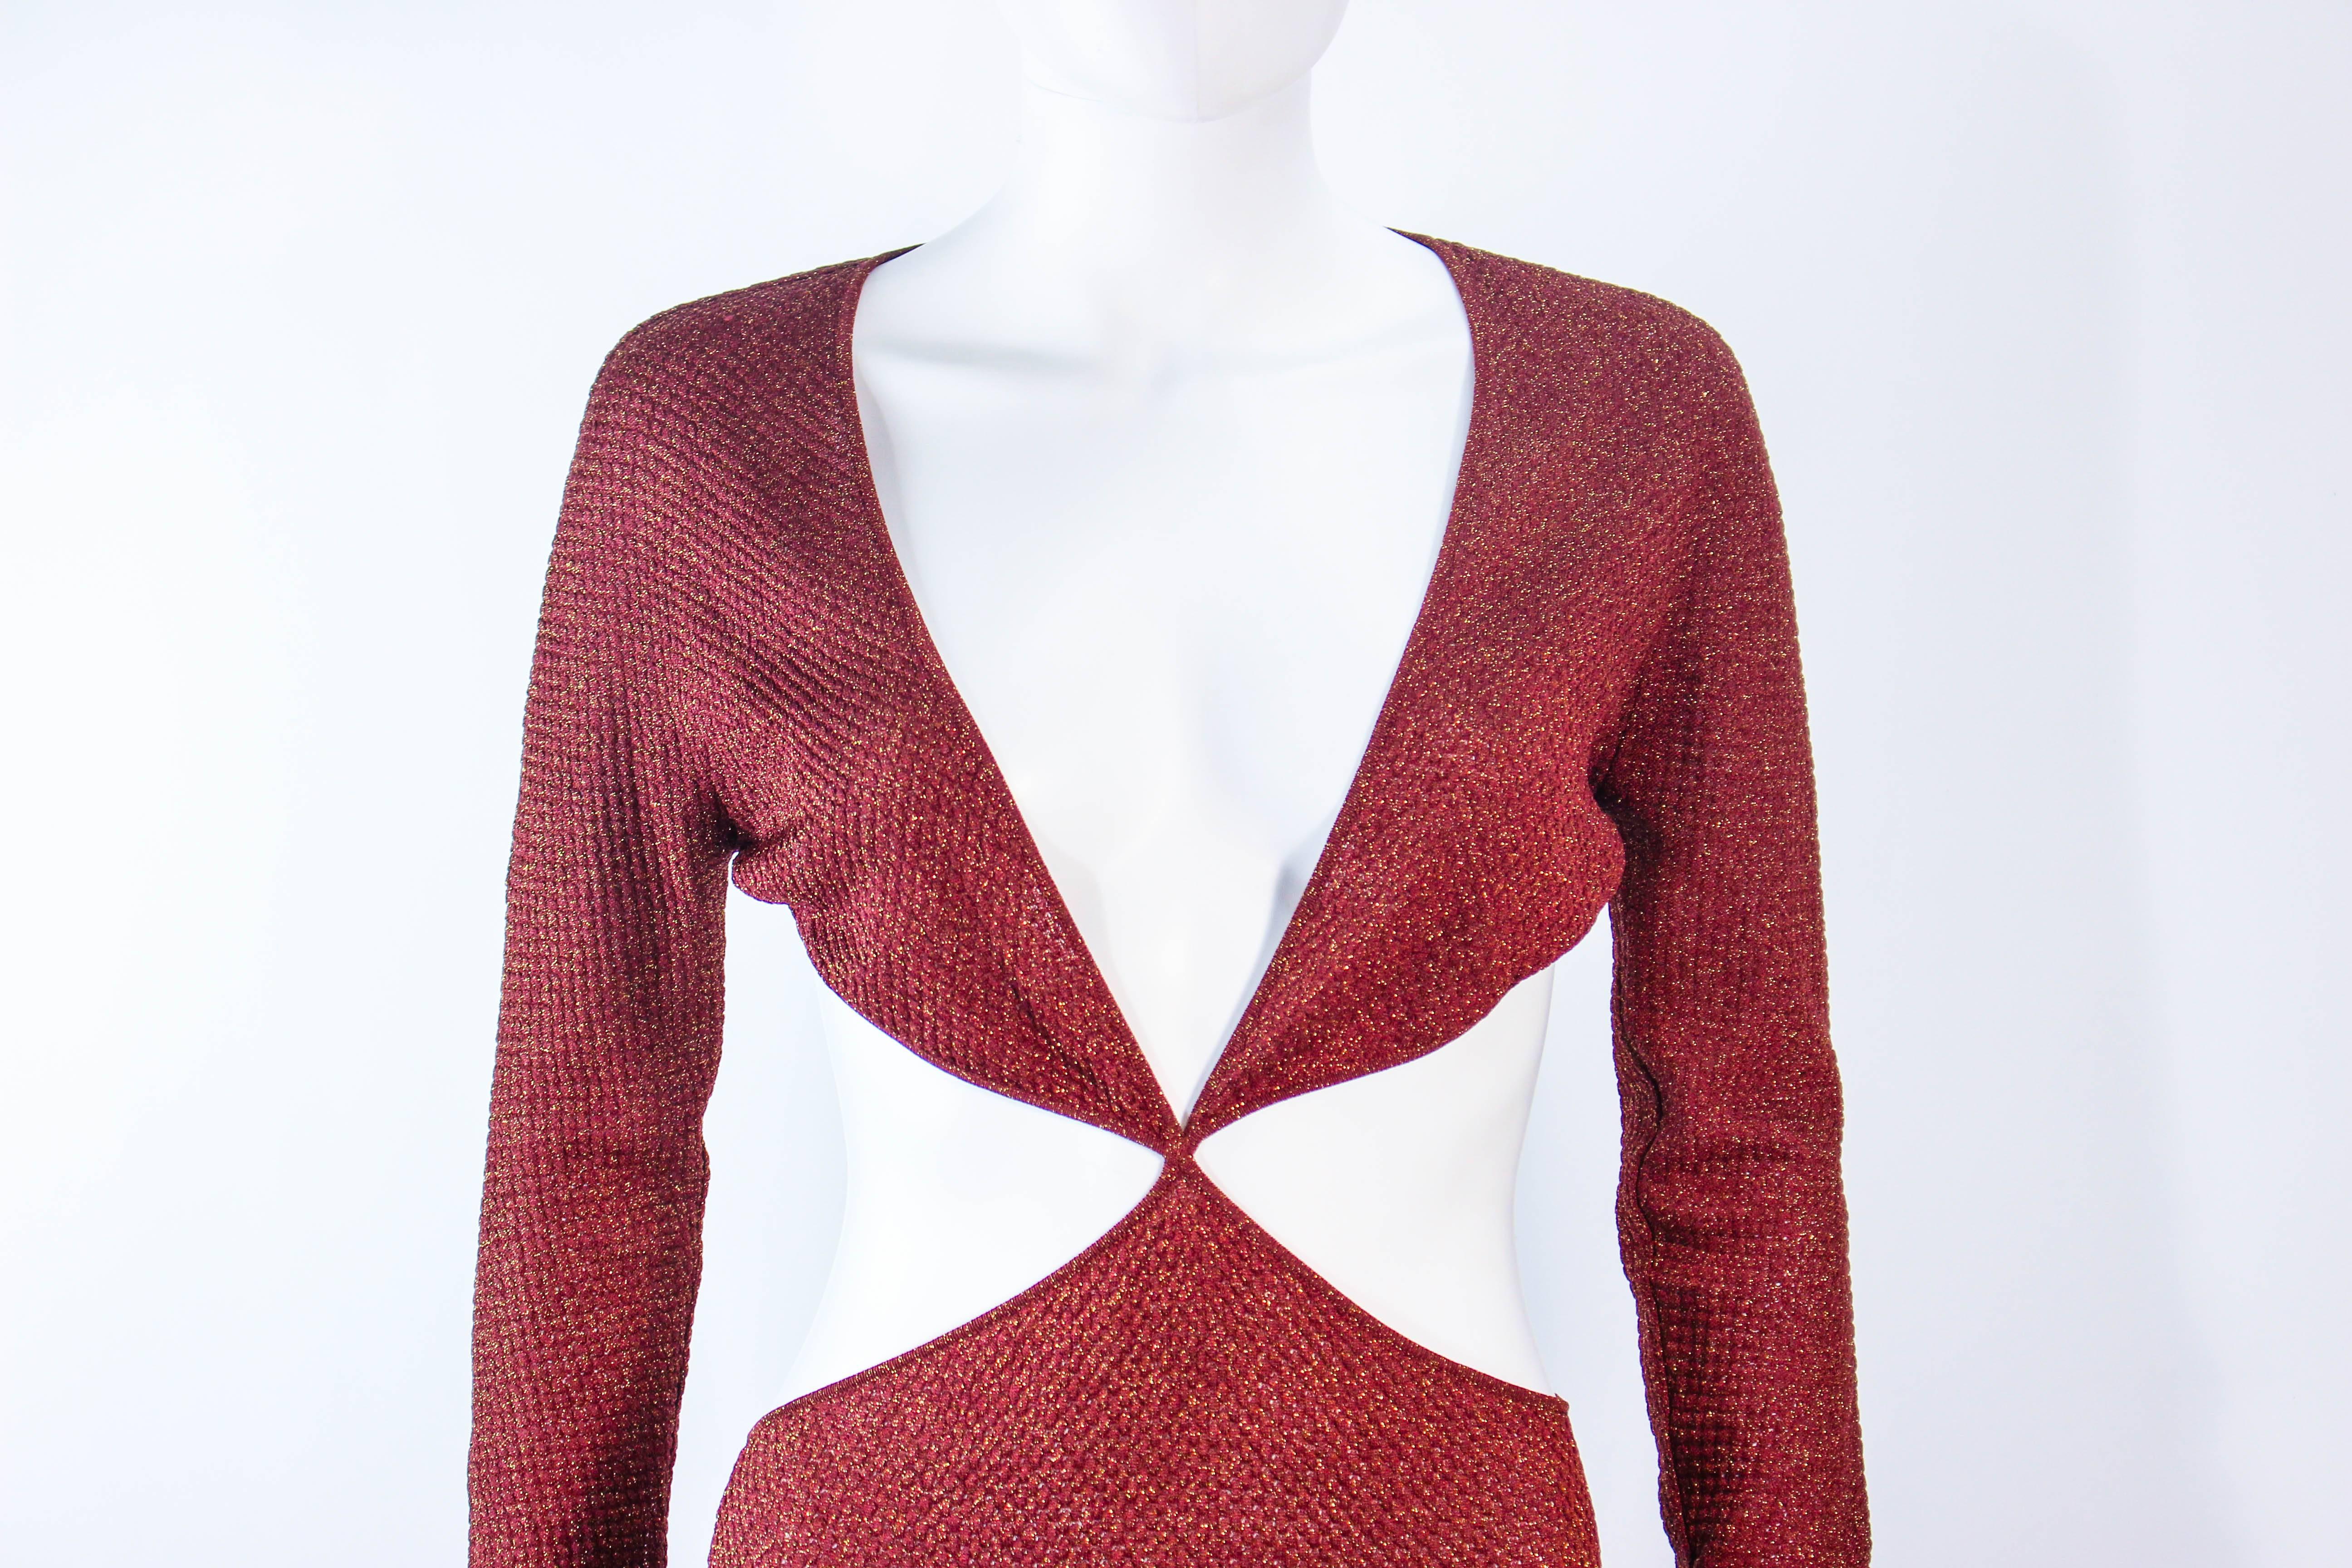 Women's Vintage Cut Out Brown & Gold Metallic Stretch Knit Maxi Dress Size XS 2 